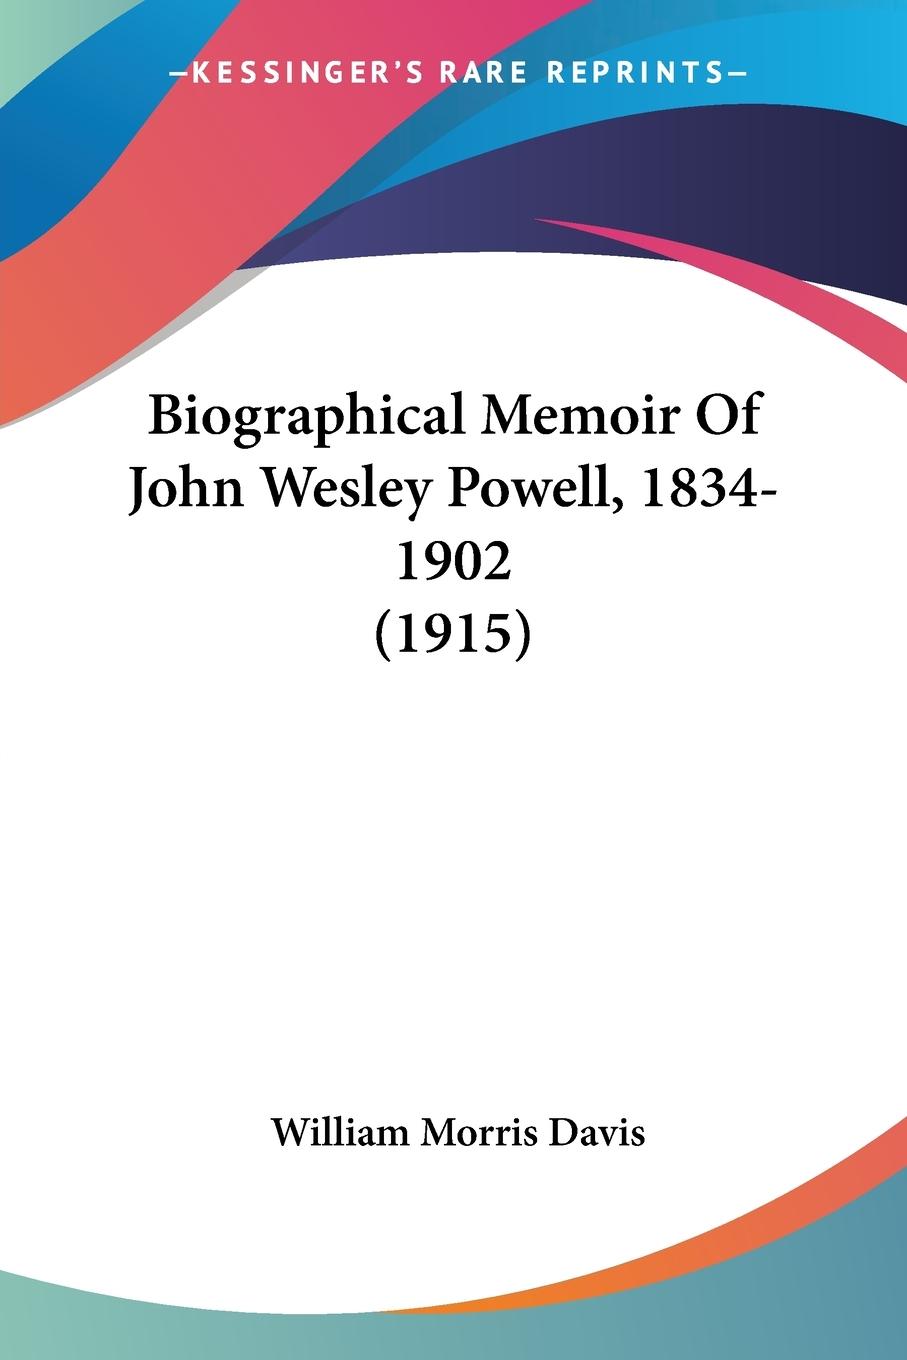 Biographical Memoir Of John Wesley Powell, 1834-1902 (1915) - Davis, William Morris